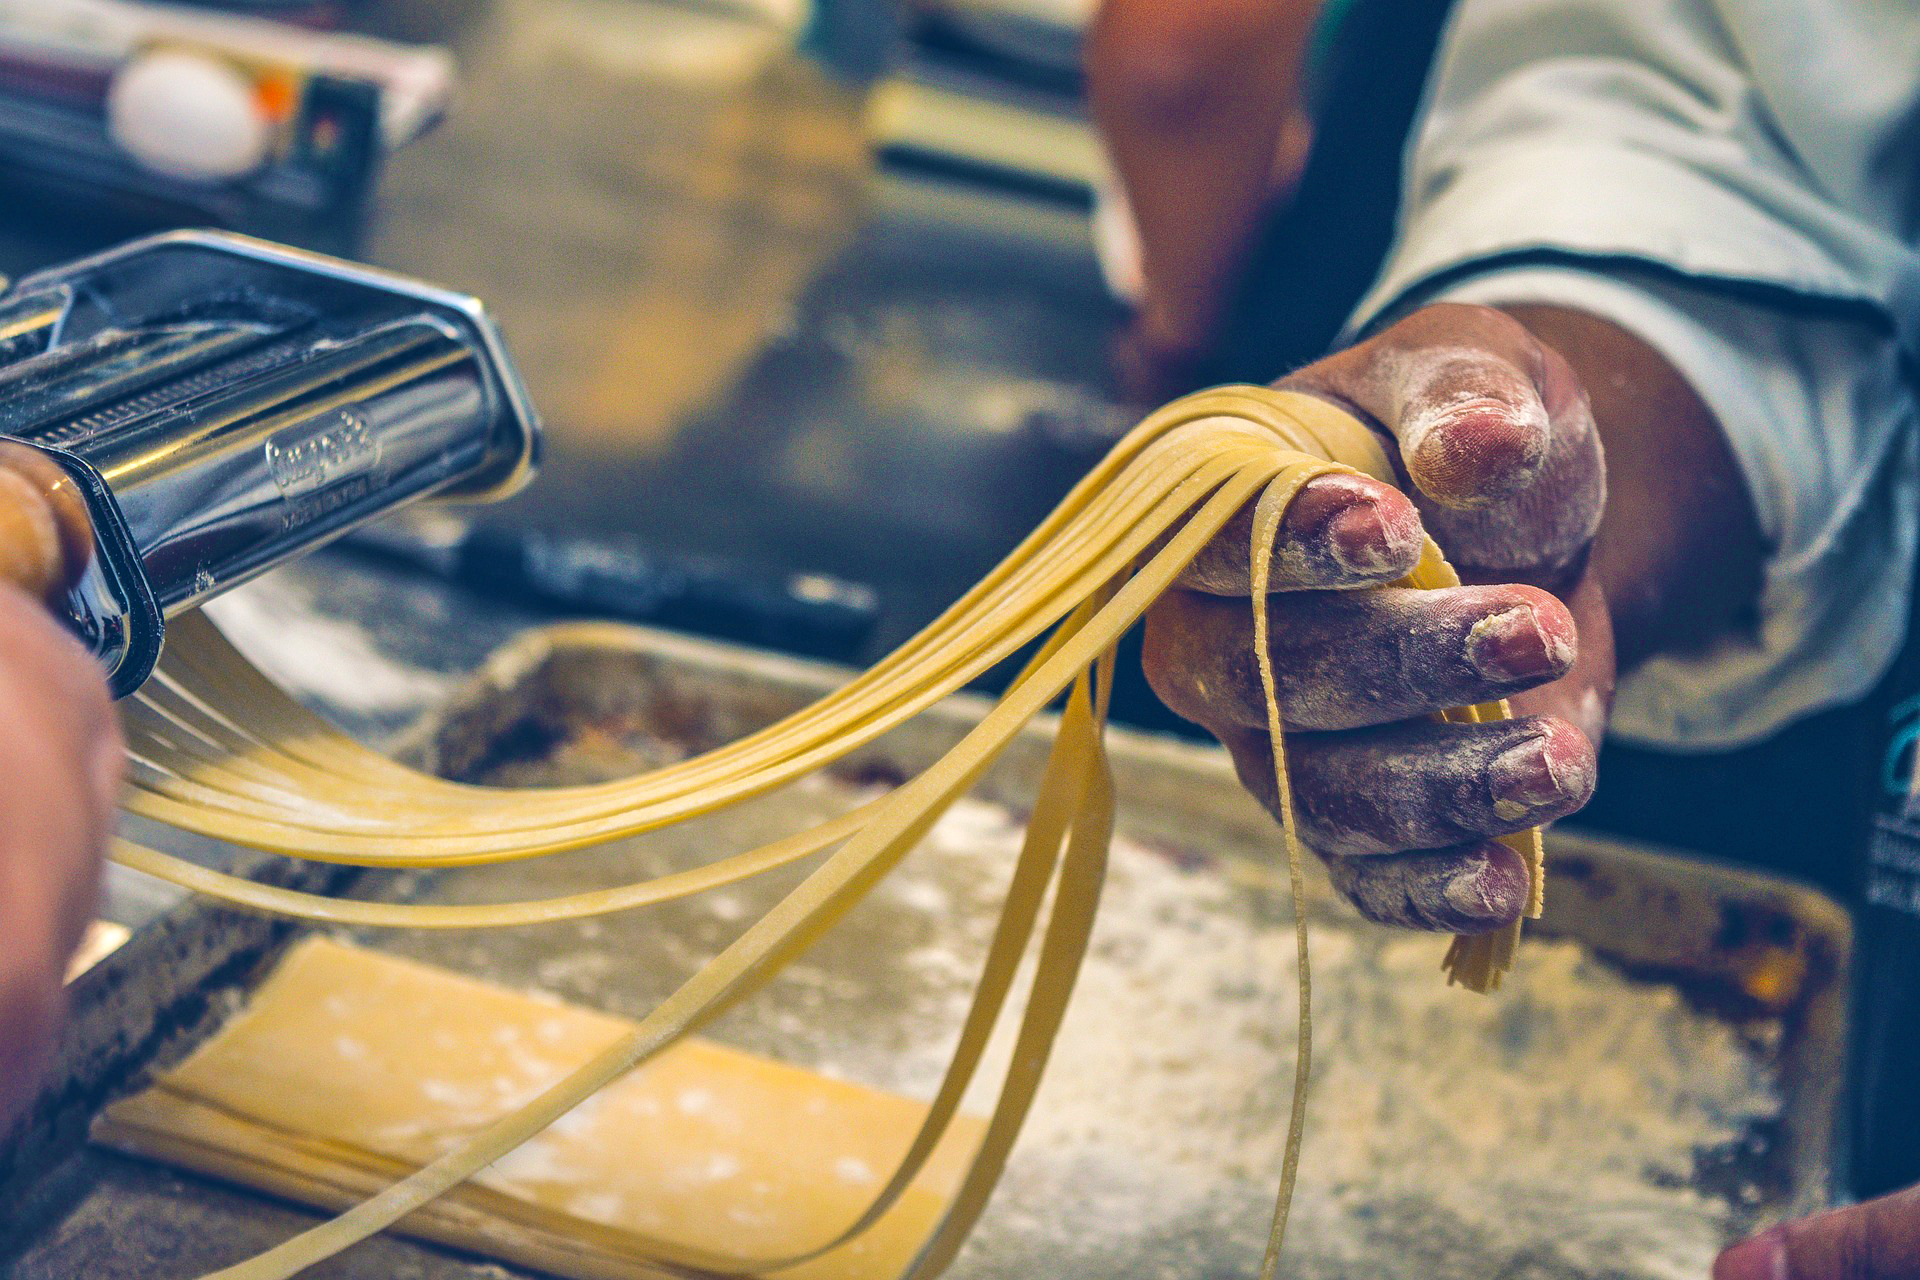 Pasta being made